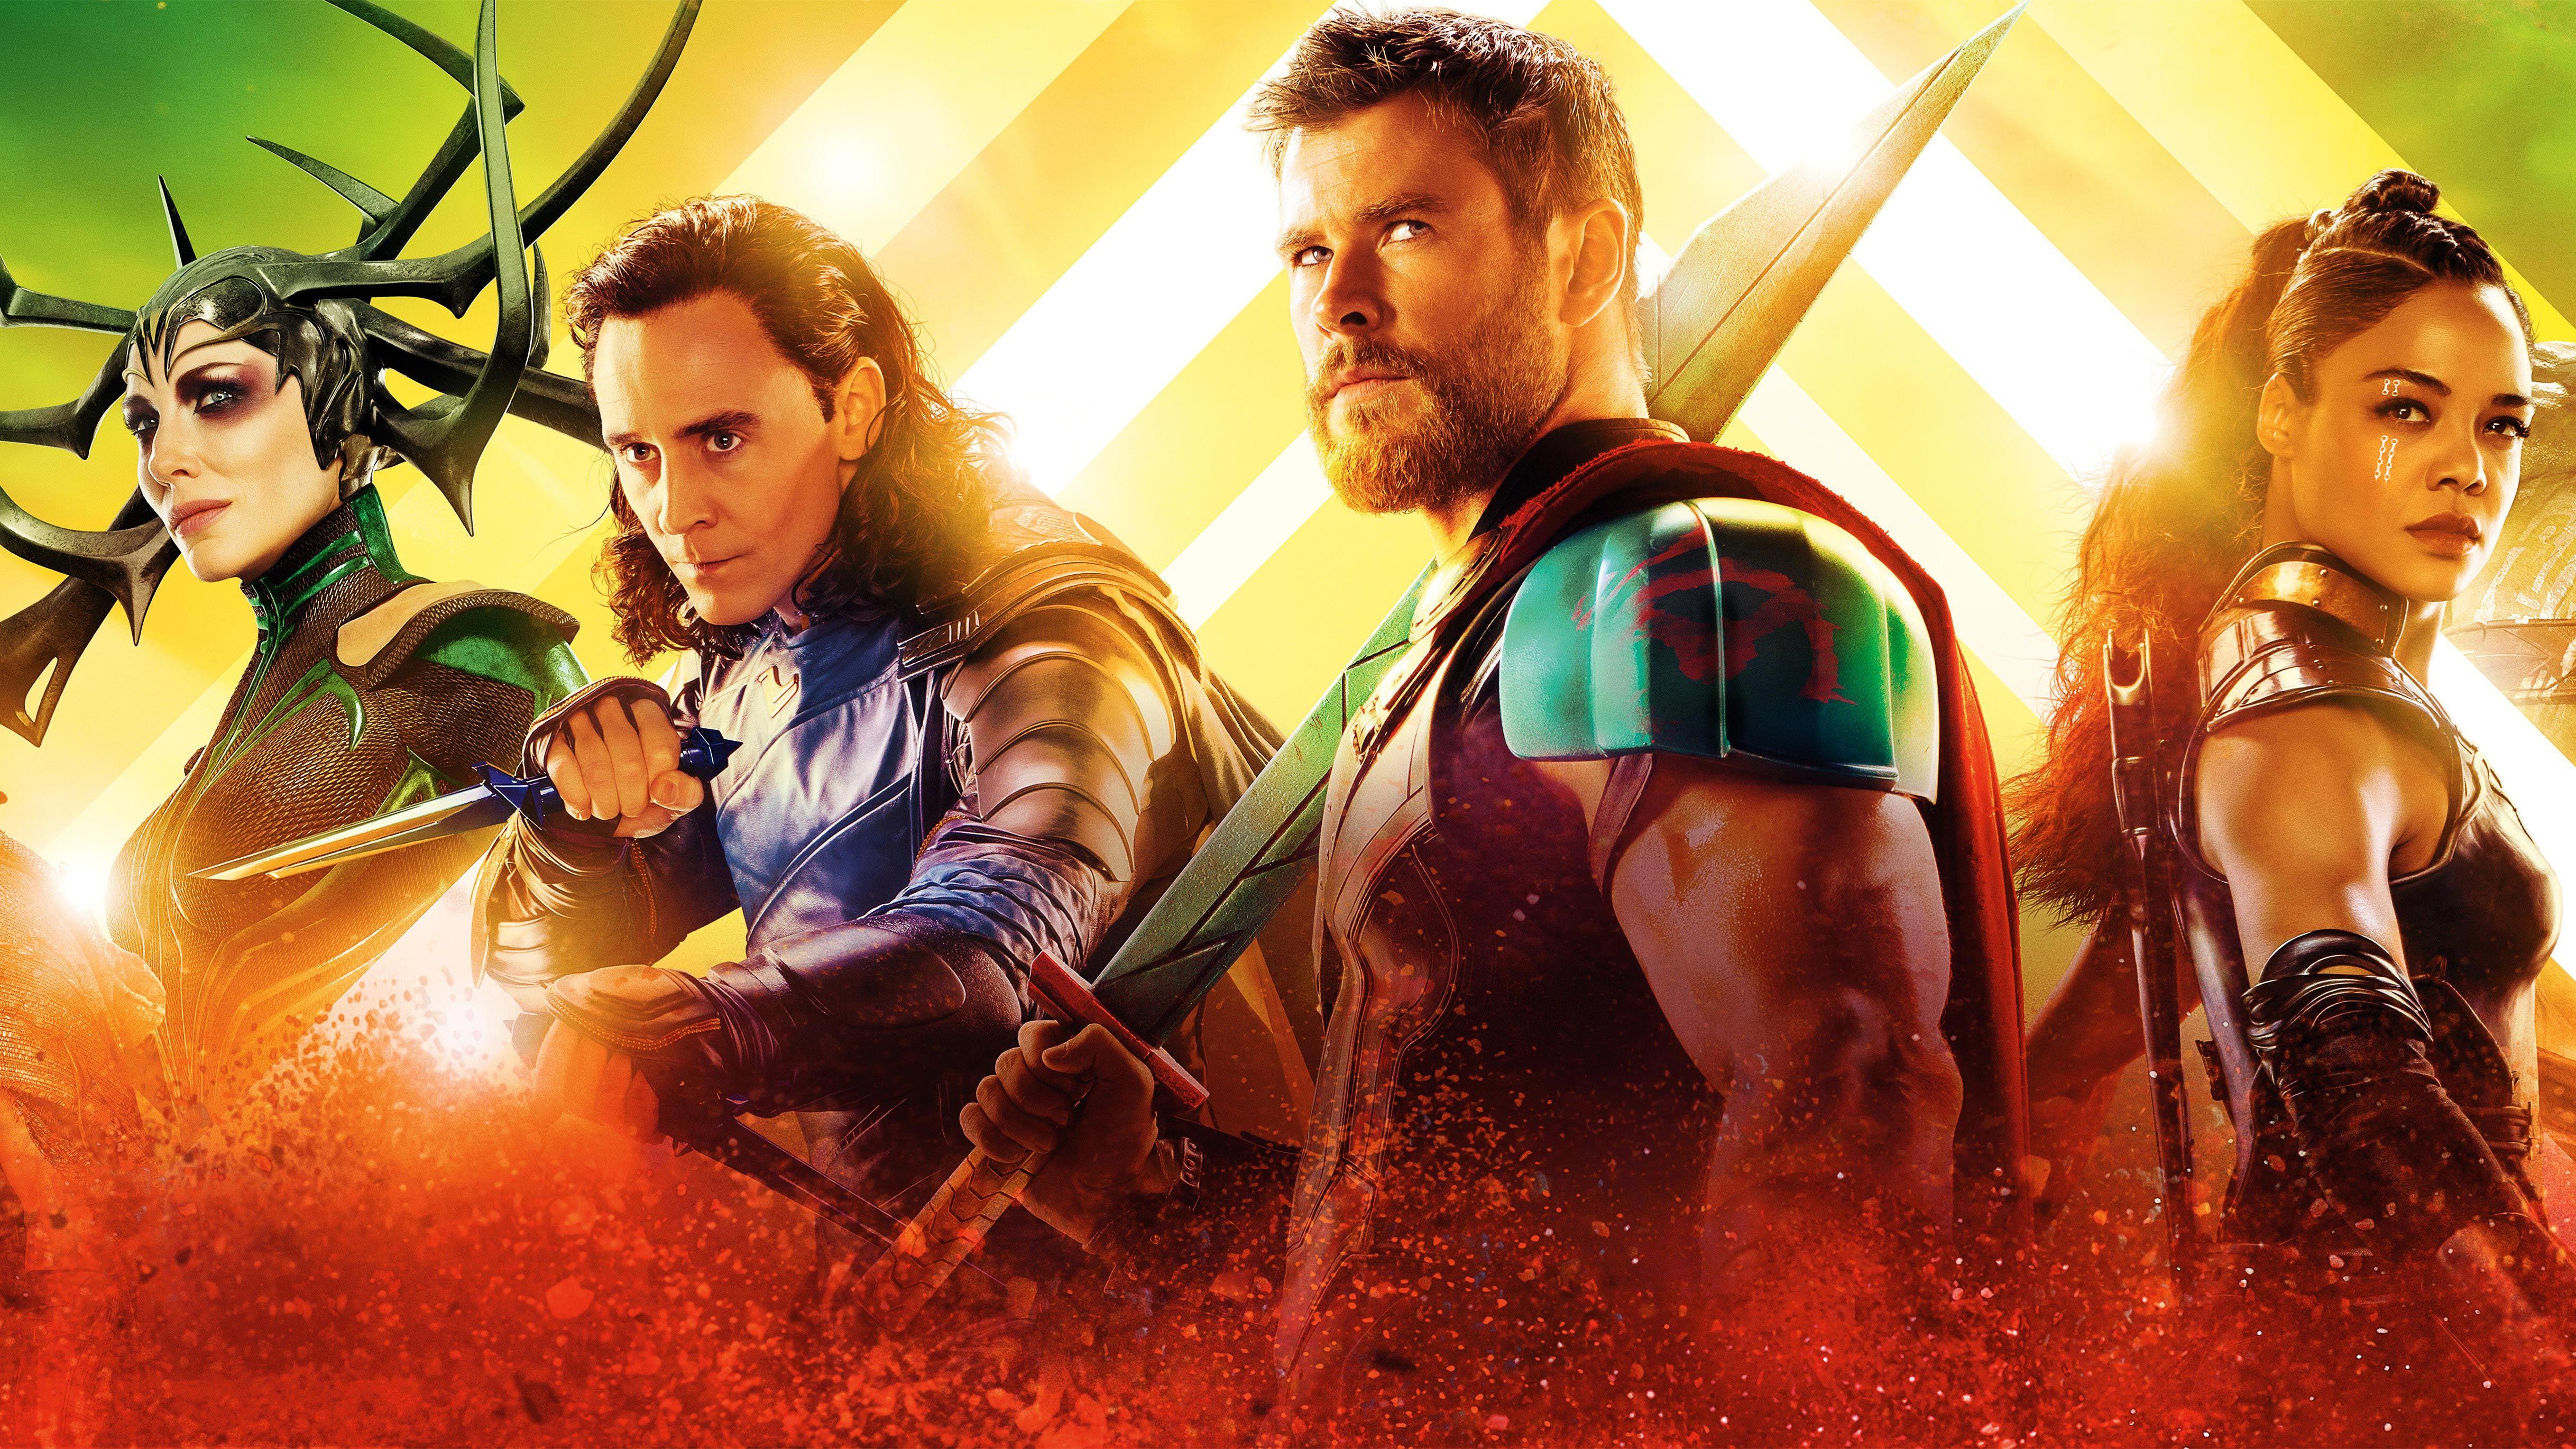 Thor Ragnarok Movie Still 2017 Wallpapers